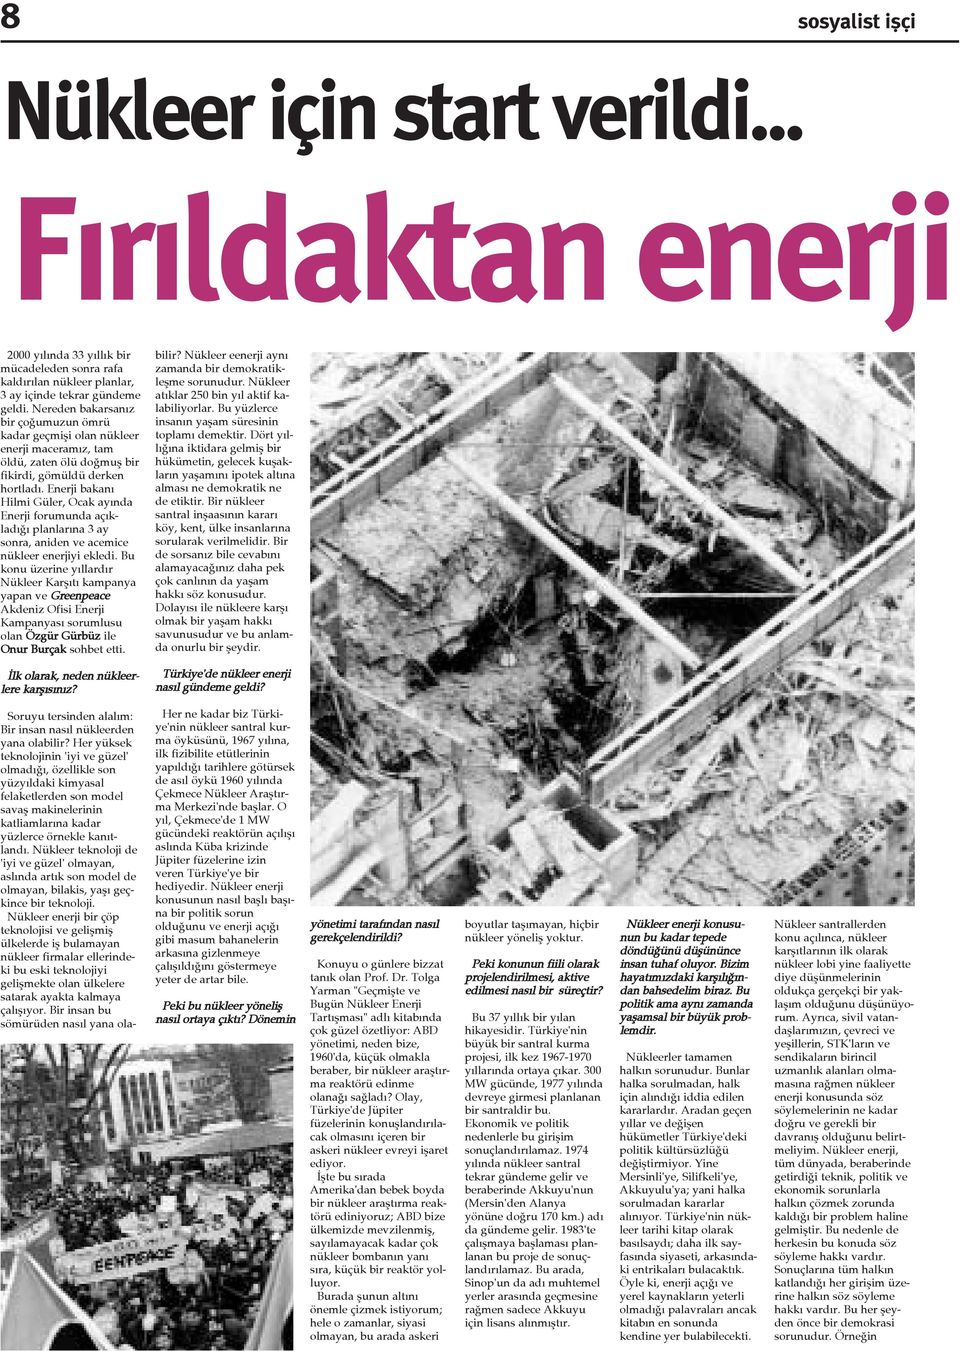 Enerji bakaný Hilmi Güler, Ocak ayýnda Enerji forumunda açýkladýðý planlarýna 3 ay sonra, aniden ve acemice nükleer enerjiyi ekledi.